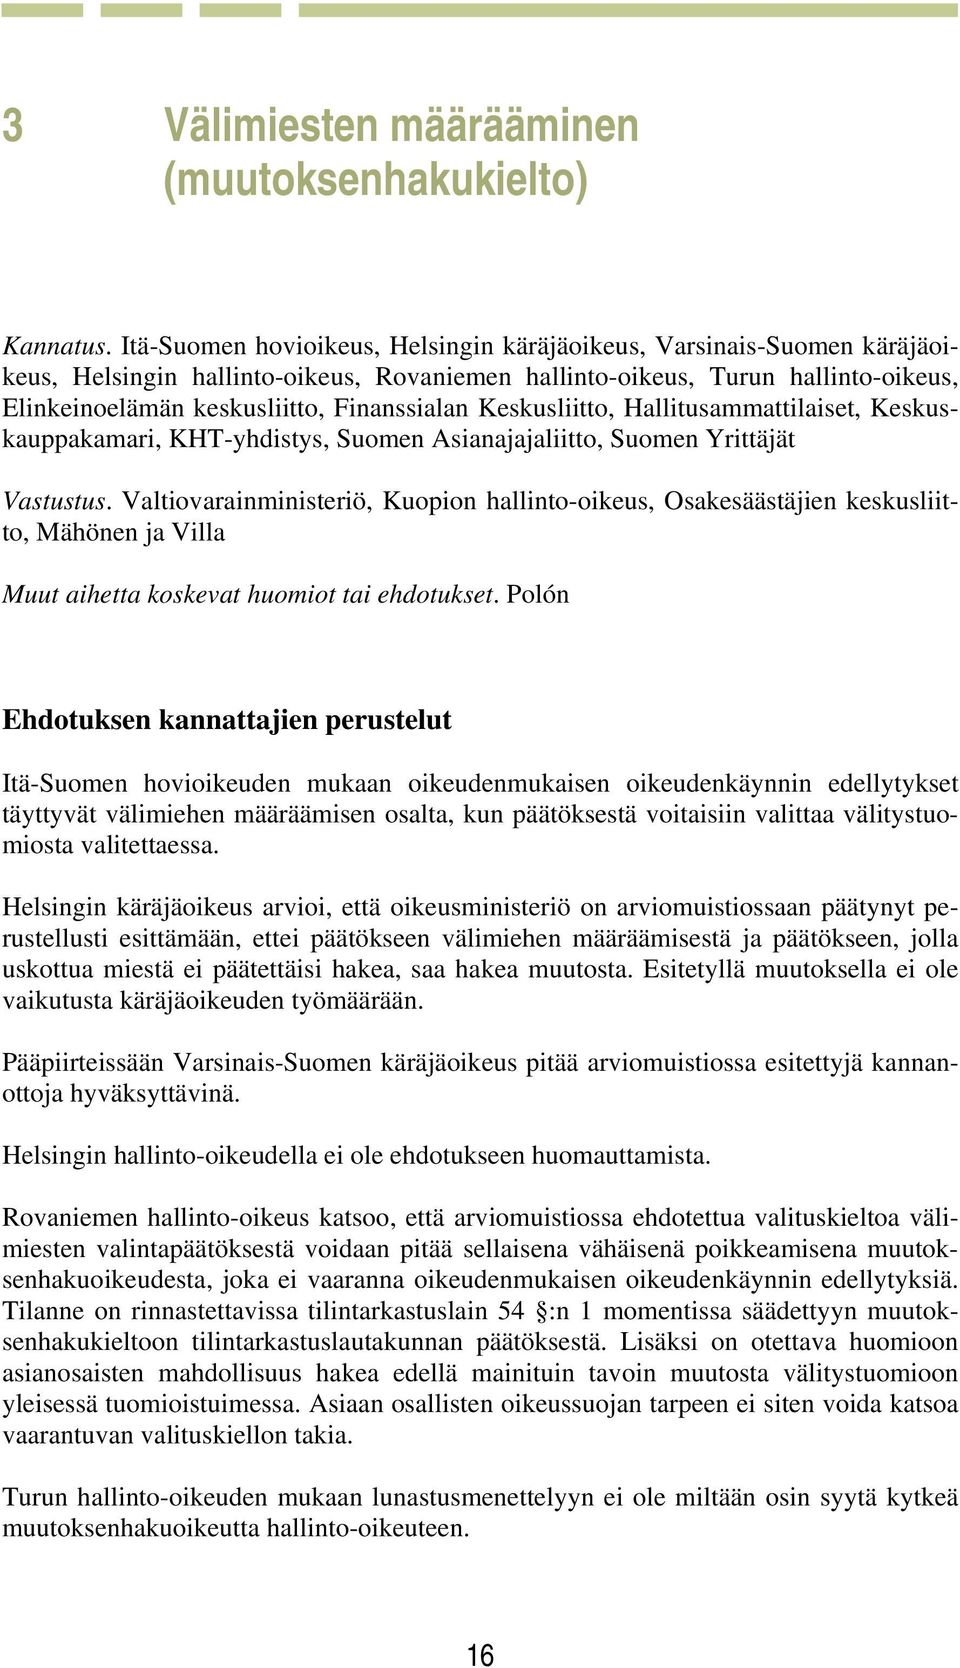 Keskusliitto, Hallitusammattilaiset, Keskuskauppakamari, KHT-yhdistys, Suomen Asianajajaliitto, Suomen Yrittäjät Vastustus.